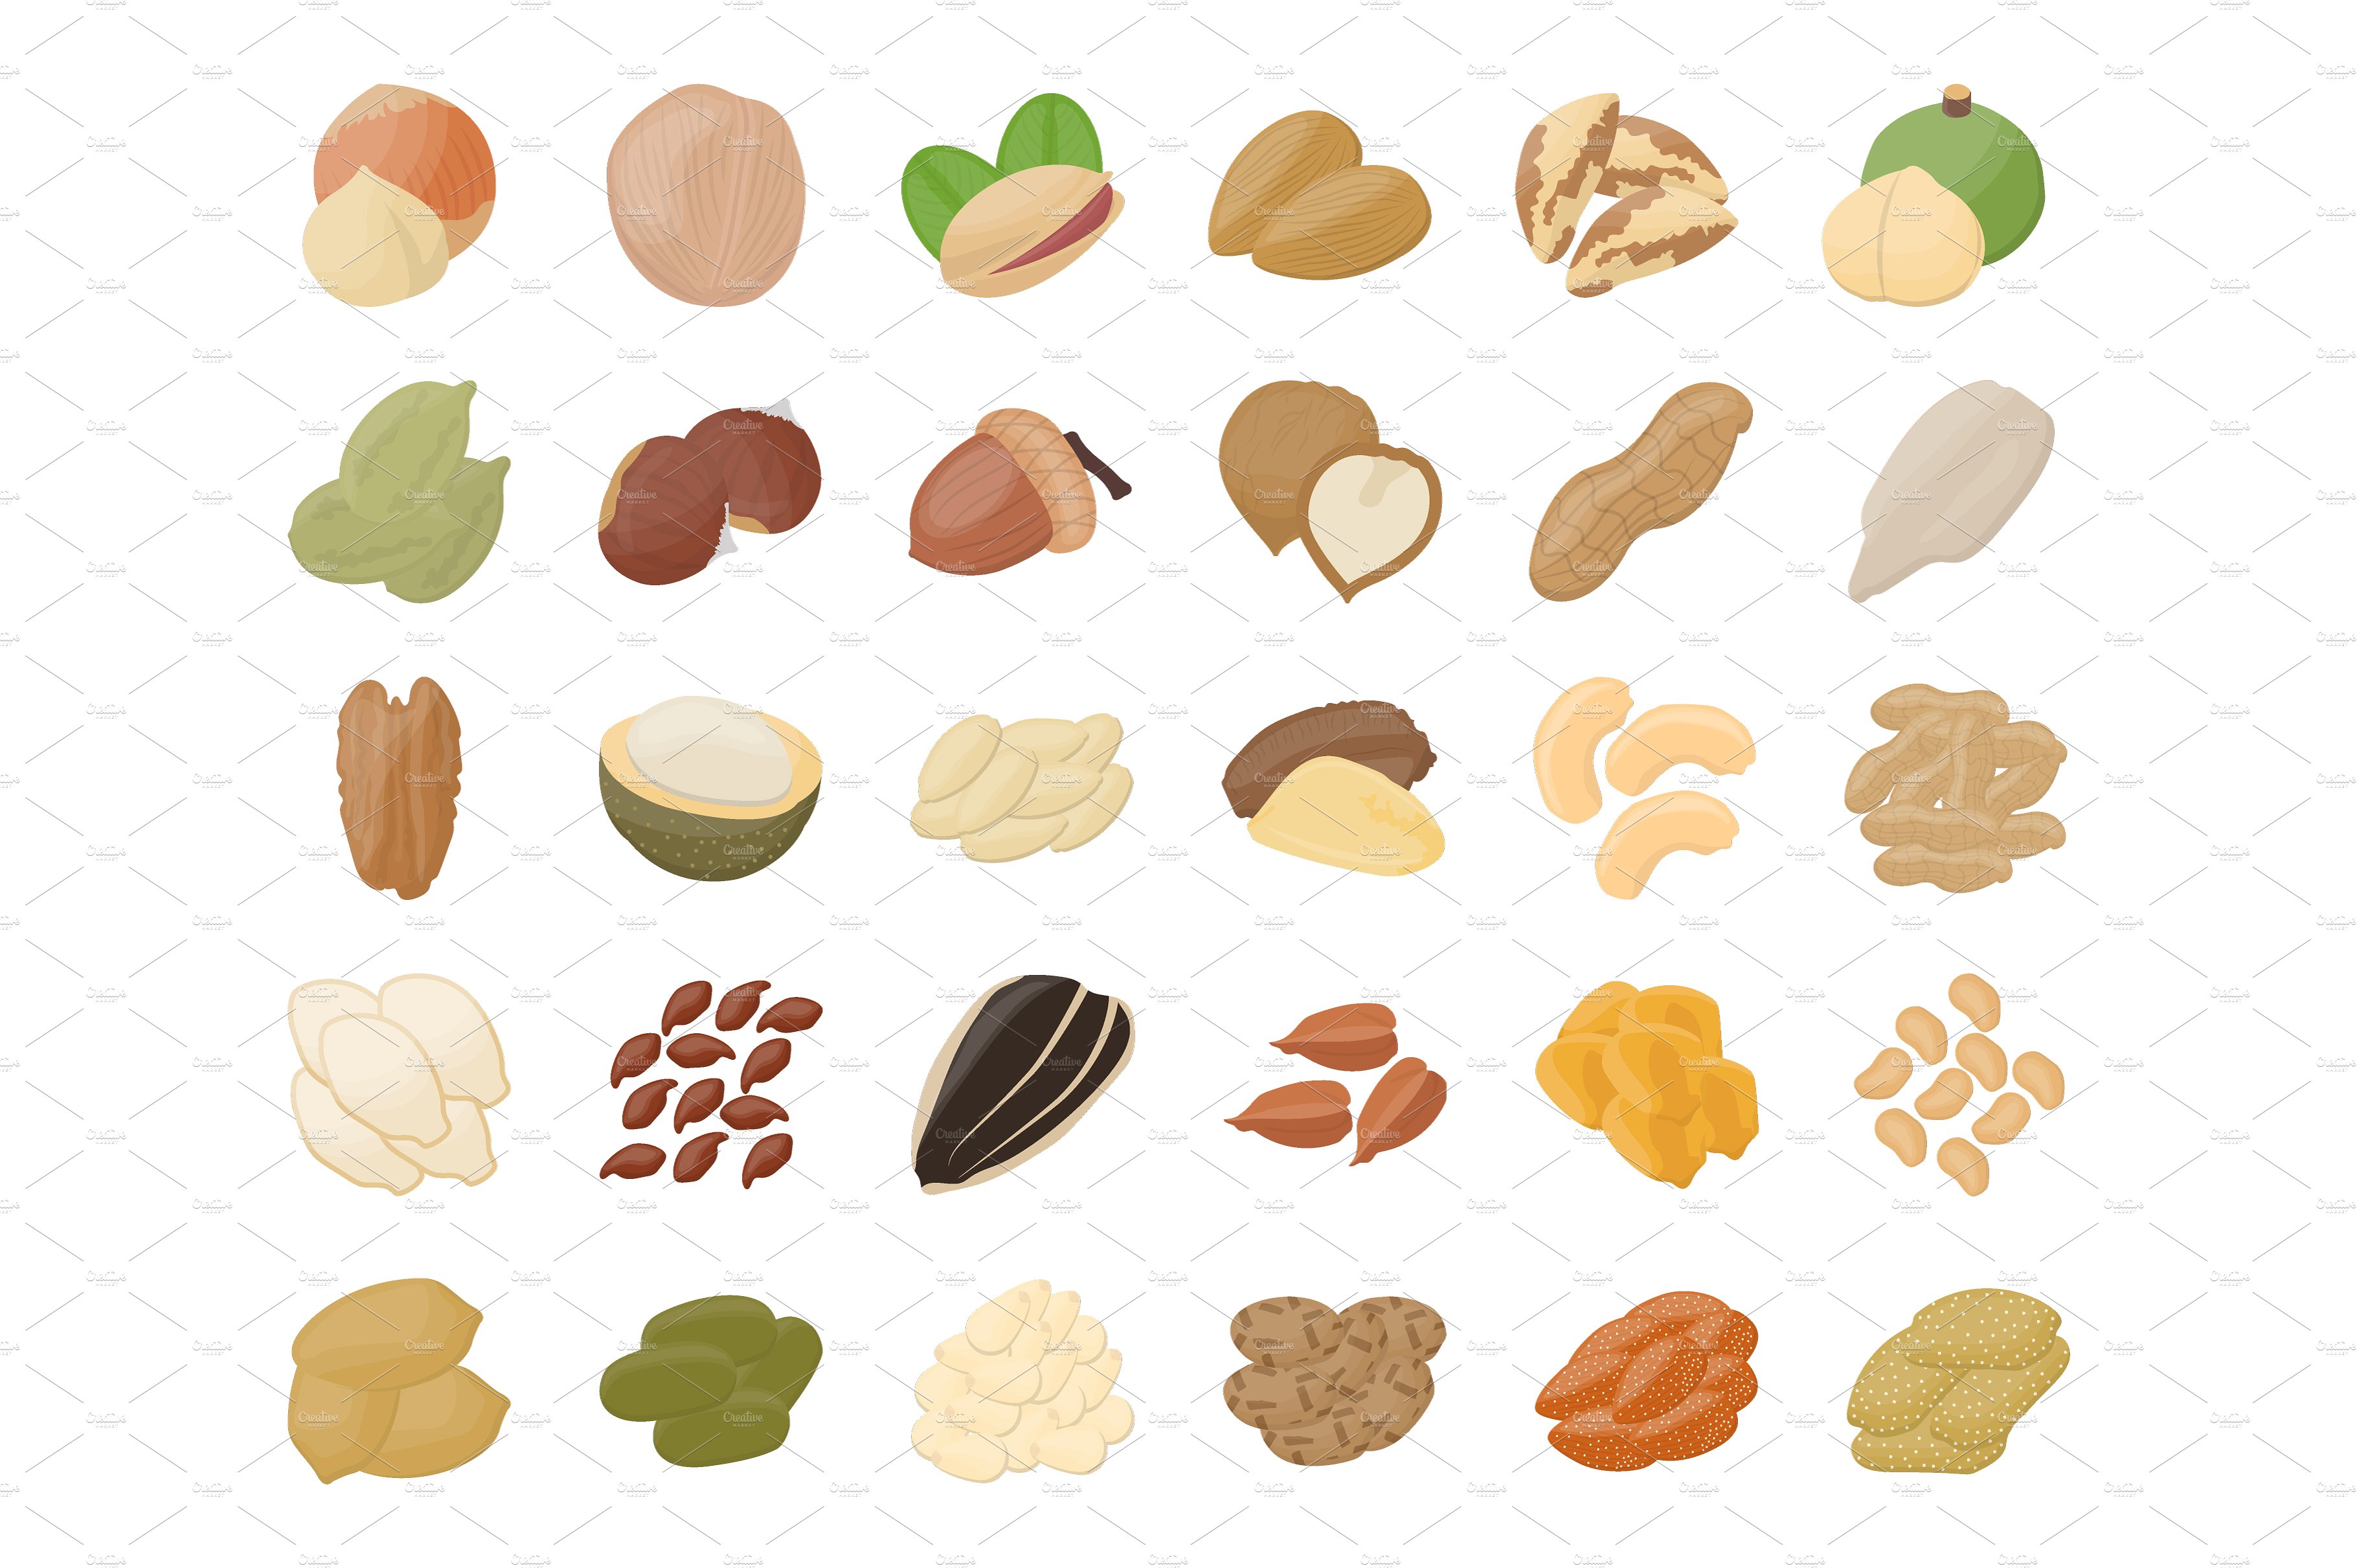 扁平化坚果图标素材 55 Nuts Flat Icons #